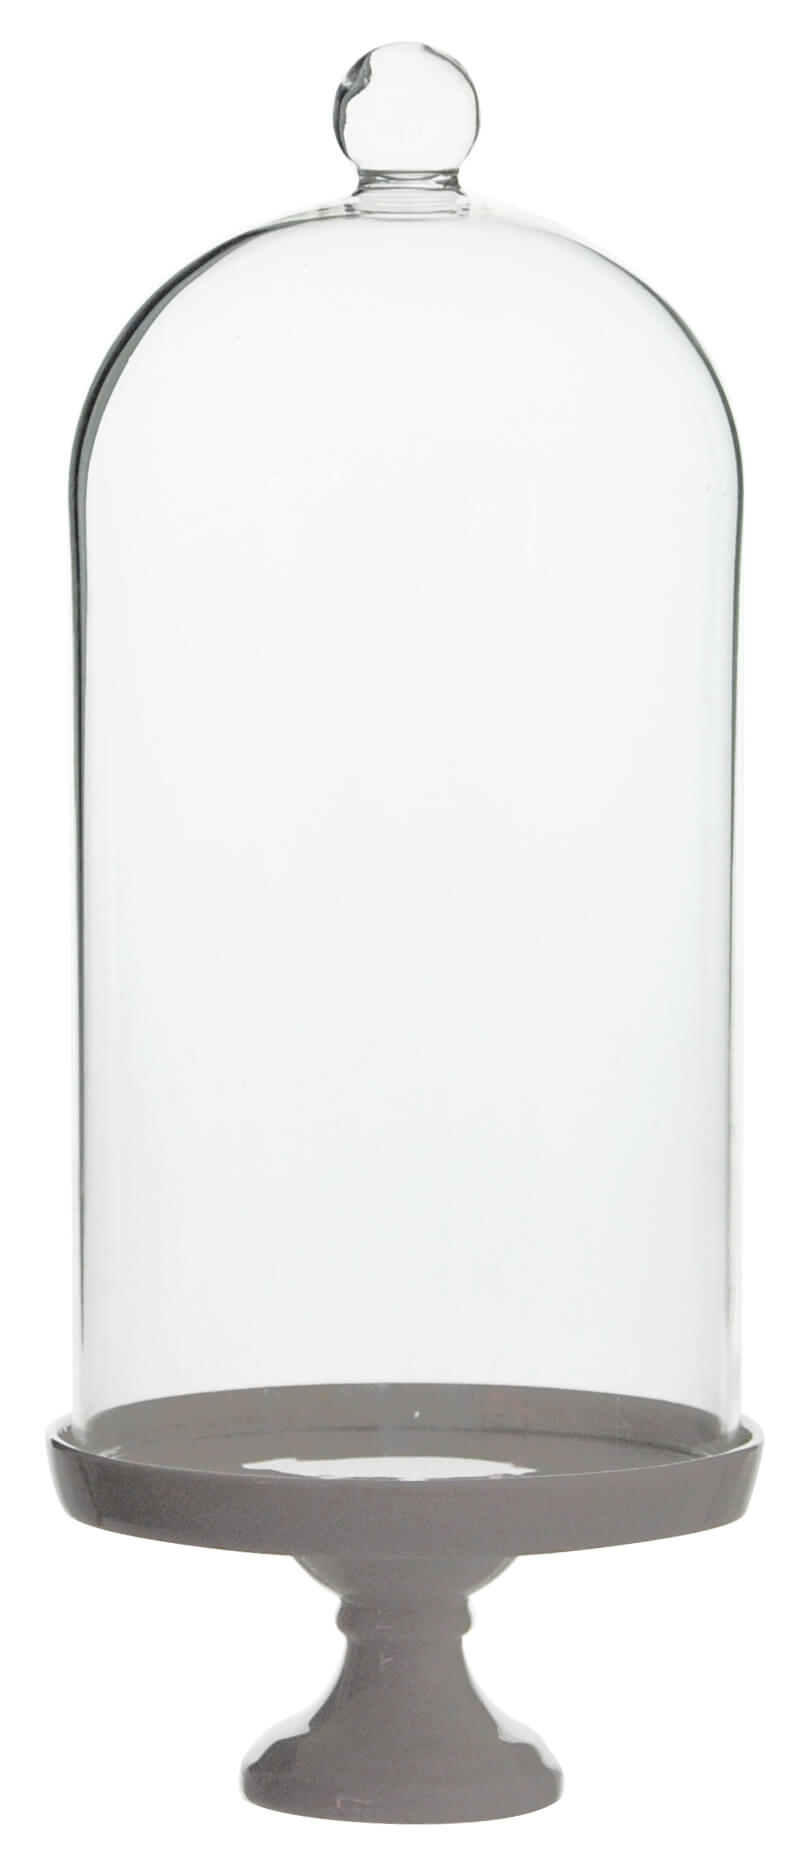 Cloche en verre avec assiette en porcelaine cloche décorative linteau en verre dôme en verre hotte en verre décoration de table décorative 30 cm